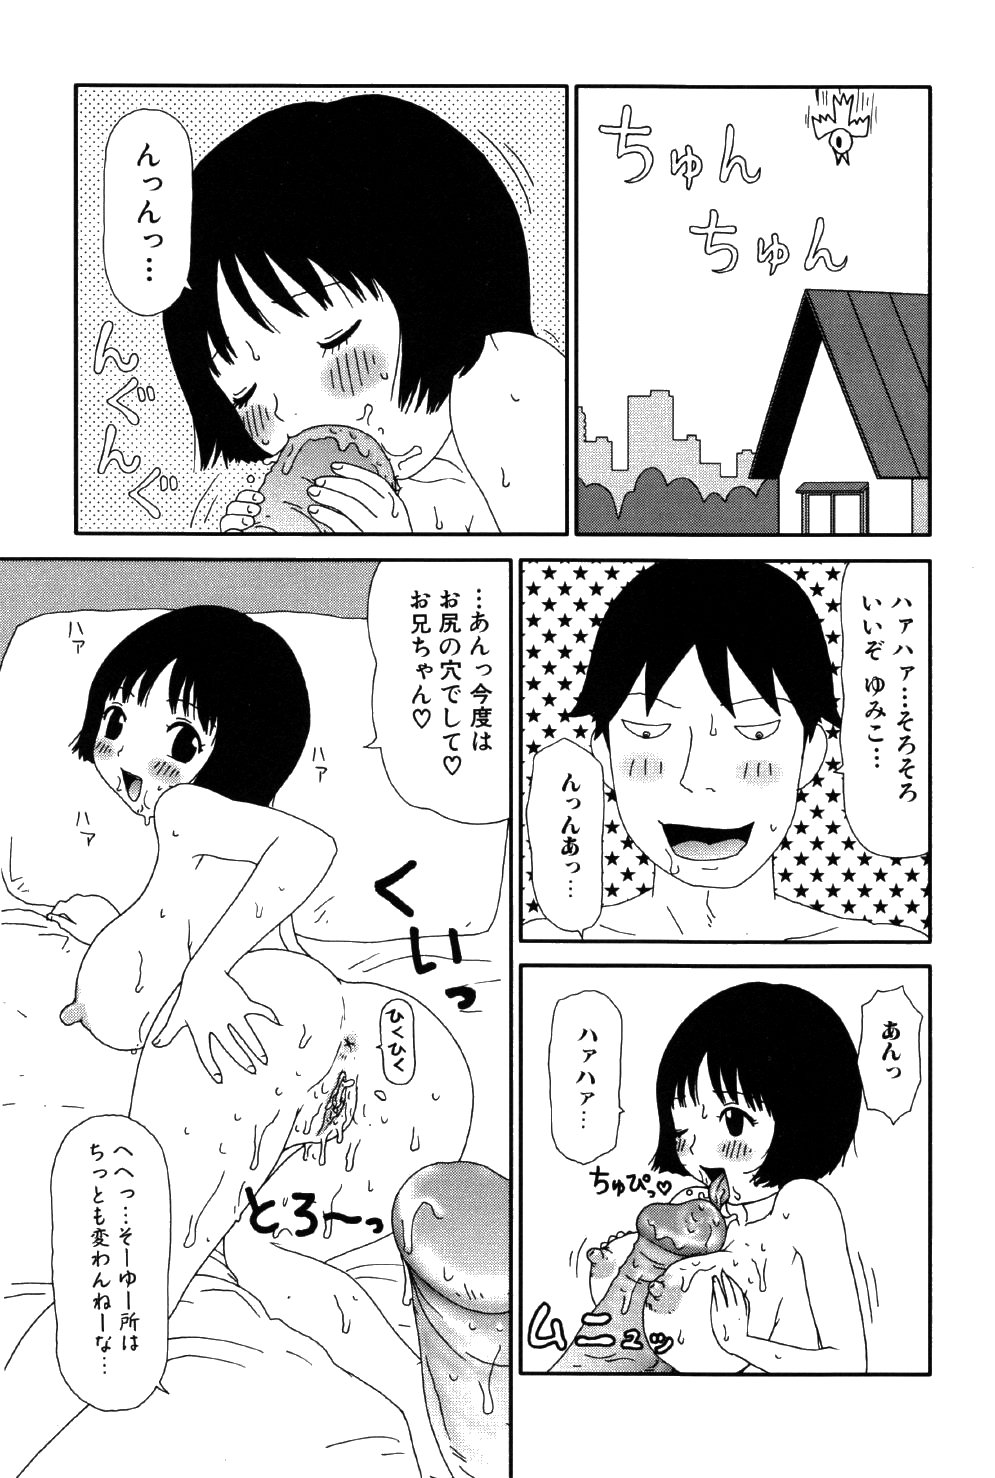 [Machino Henmaru] little yumiko chan page 7 full